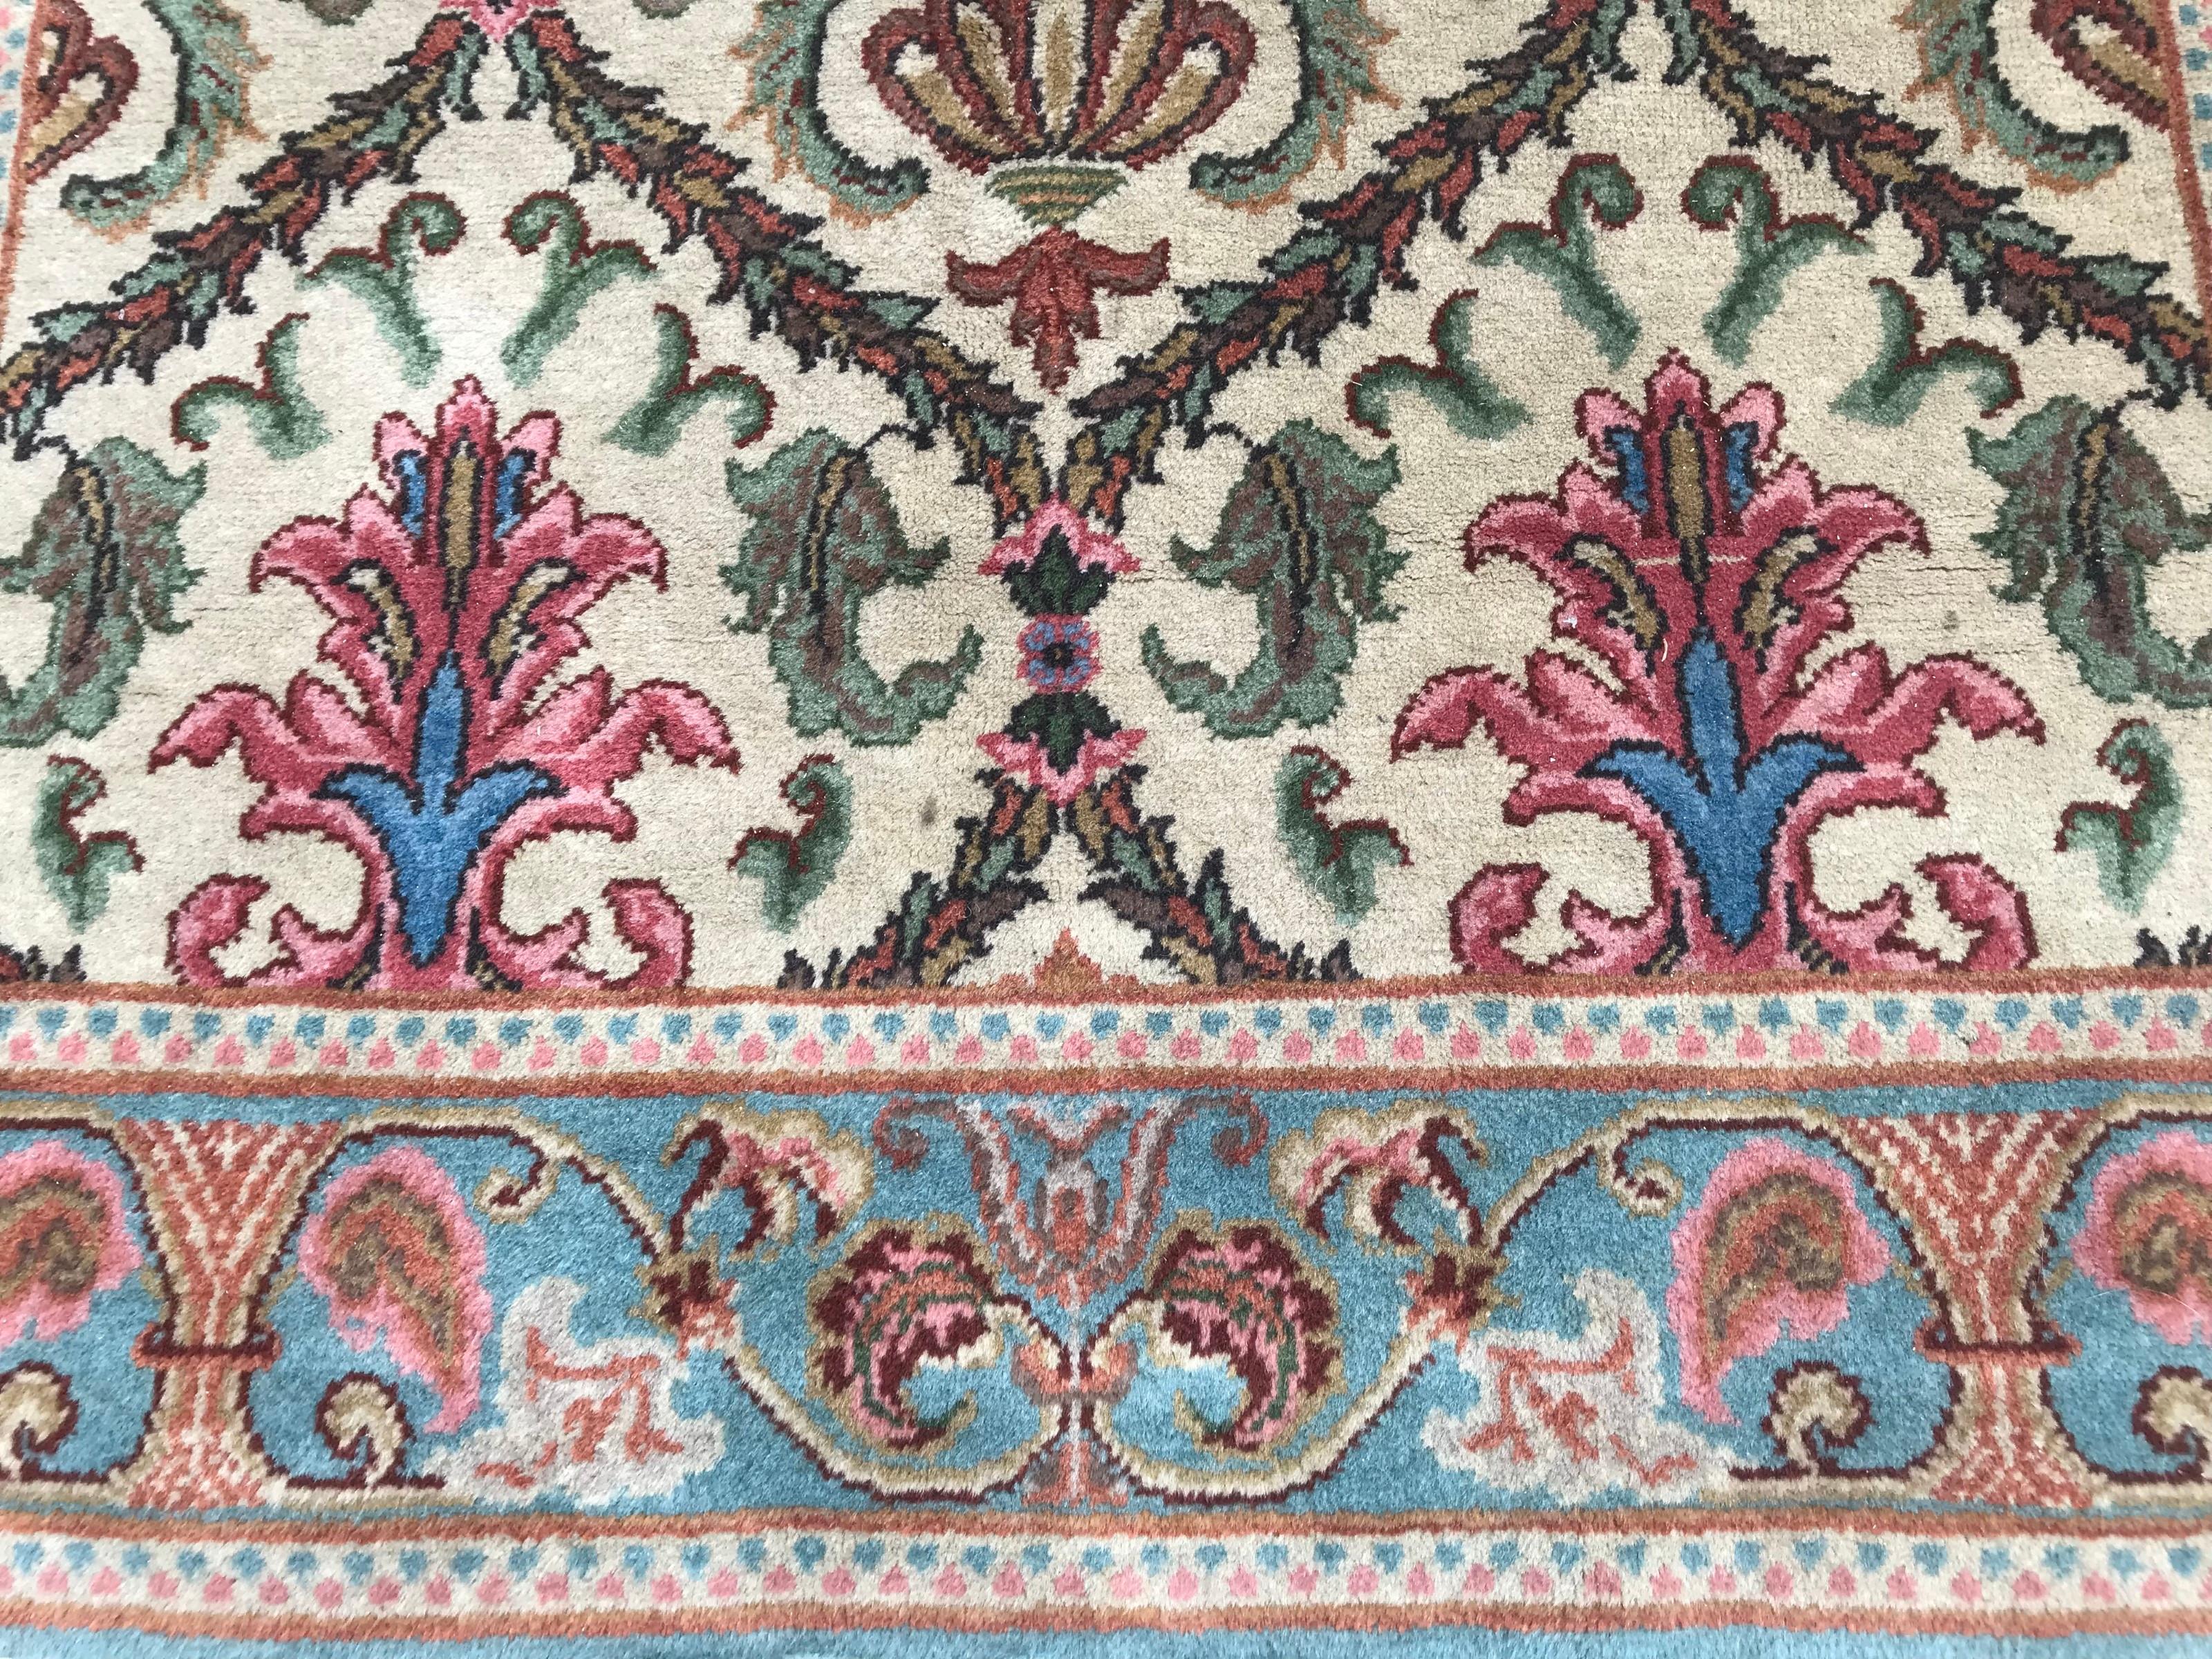 Découvrez le charme de notre exquis tapis transylvanien du milieu du XXe siècle, qui présente un étonnant motif victorien européen du XVIIe siècle. Noué à la main avec soin, ses couleurs vibrantes de vert, de bleu et de rose ajoutent une touche